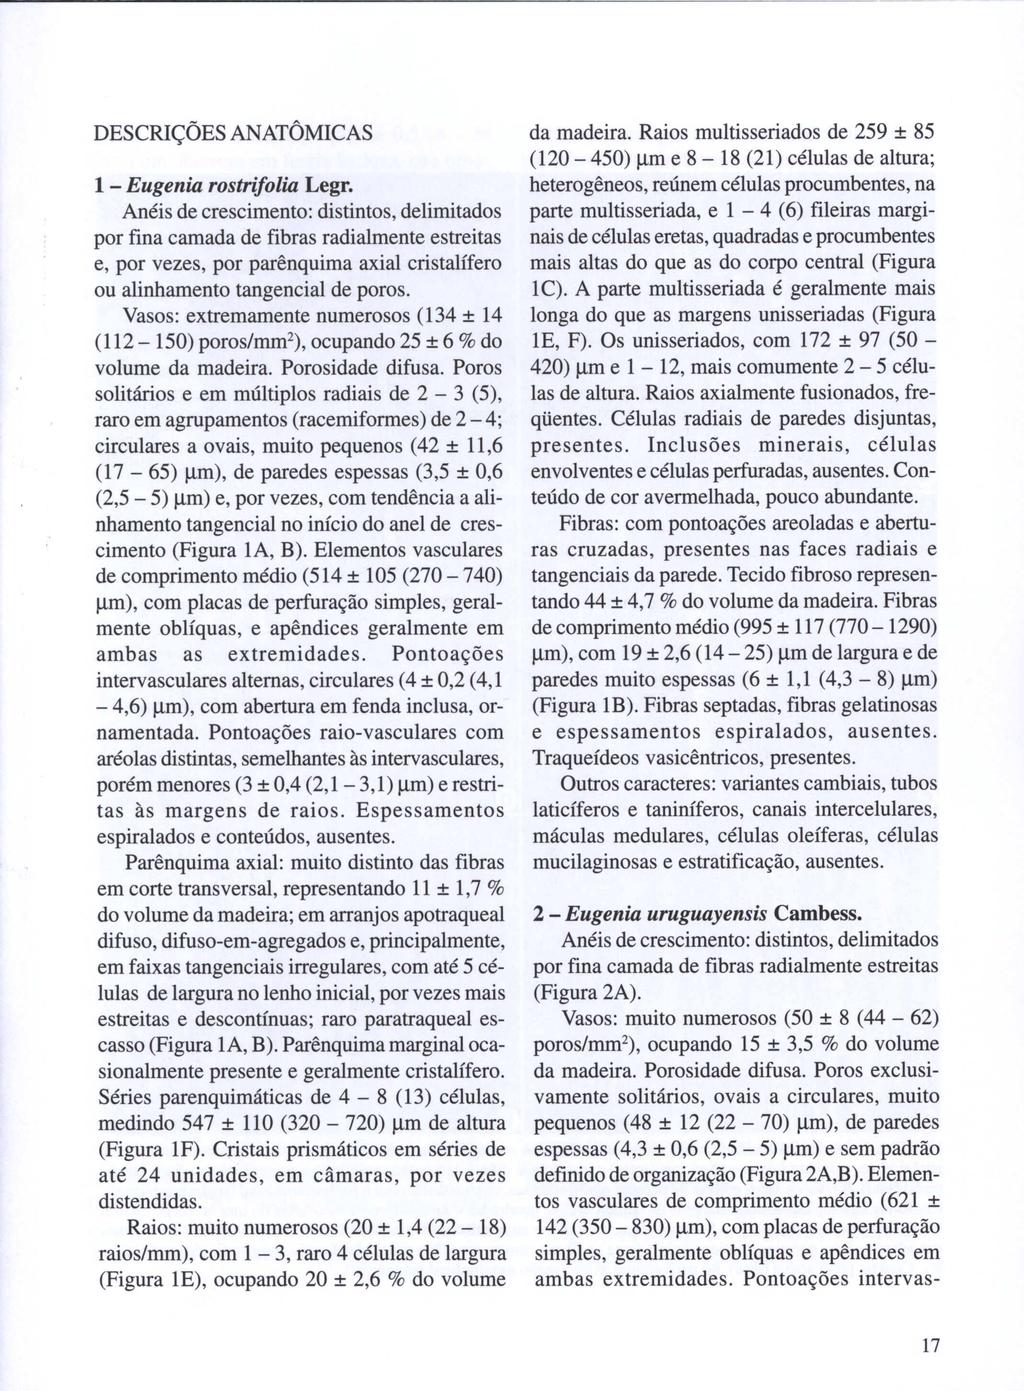 DESCRIÇÕES ANATÔMICAS 1 - Eugenia rostrifolia Legr.